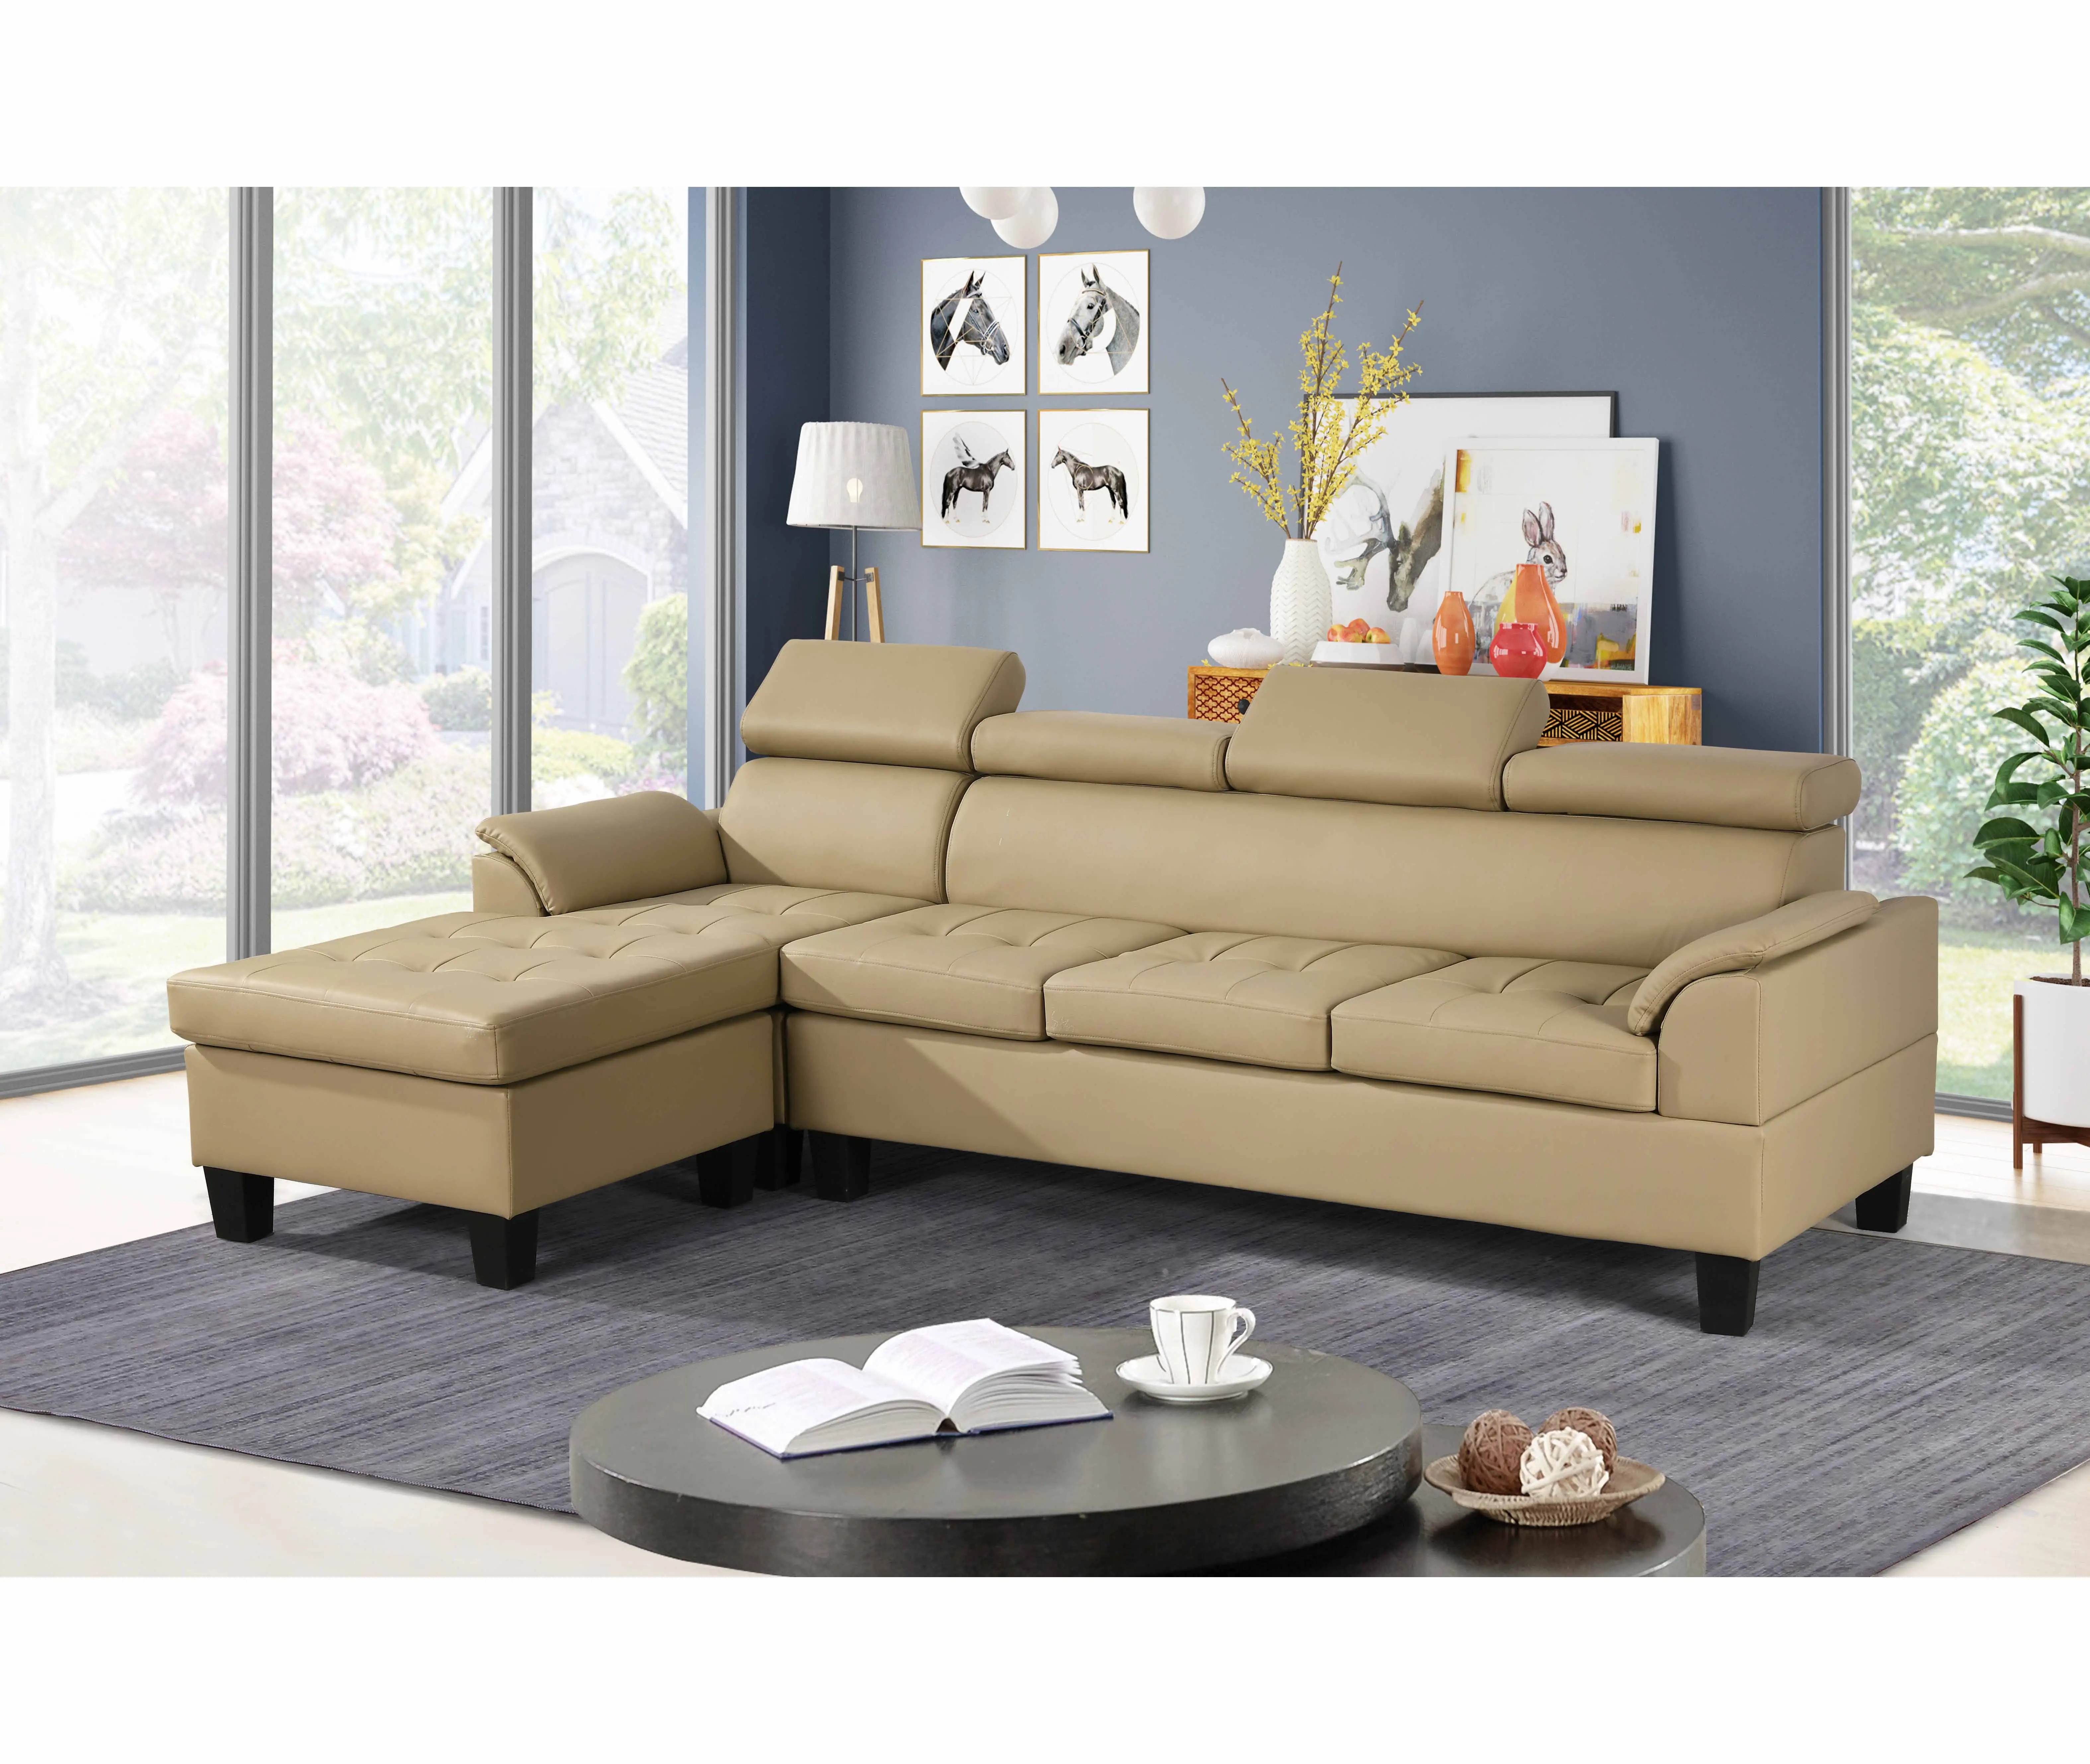 Terbaru Beige ruang tamu pabrik kulit kustom grosir klasik sofa murah